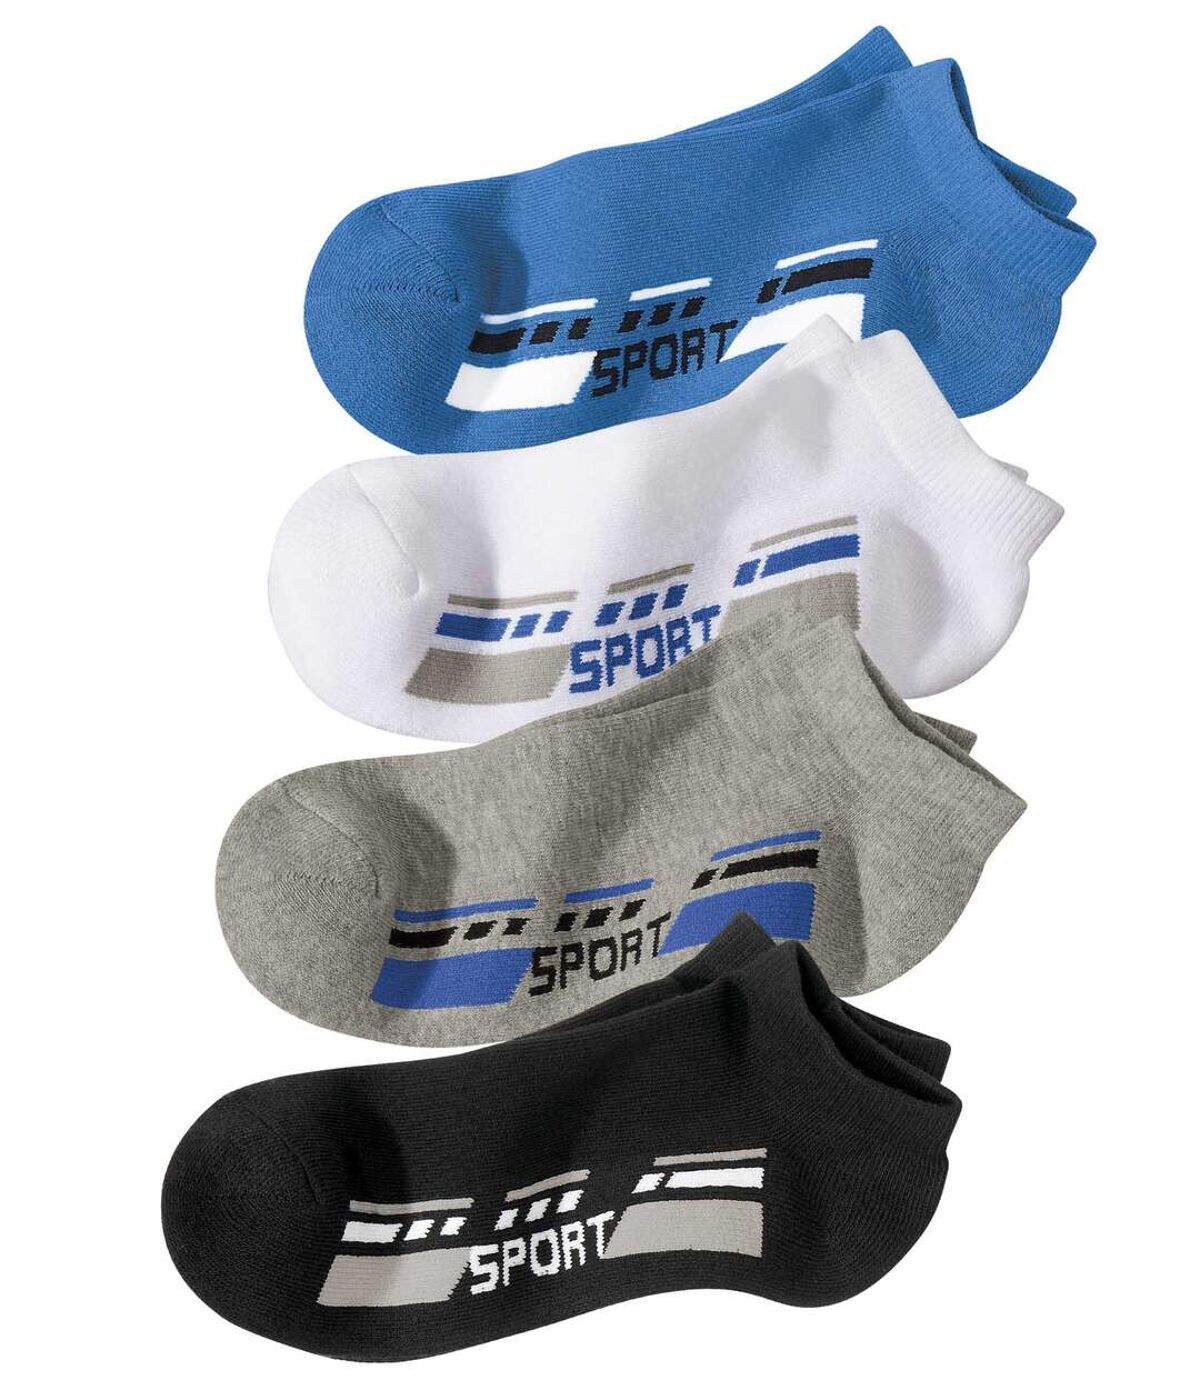 Pack of 4 Pairs of Men's Sneaker Socks - Blue White Grey Black Atlas For Men